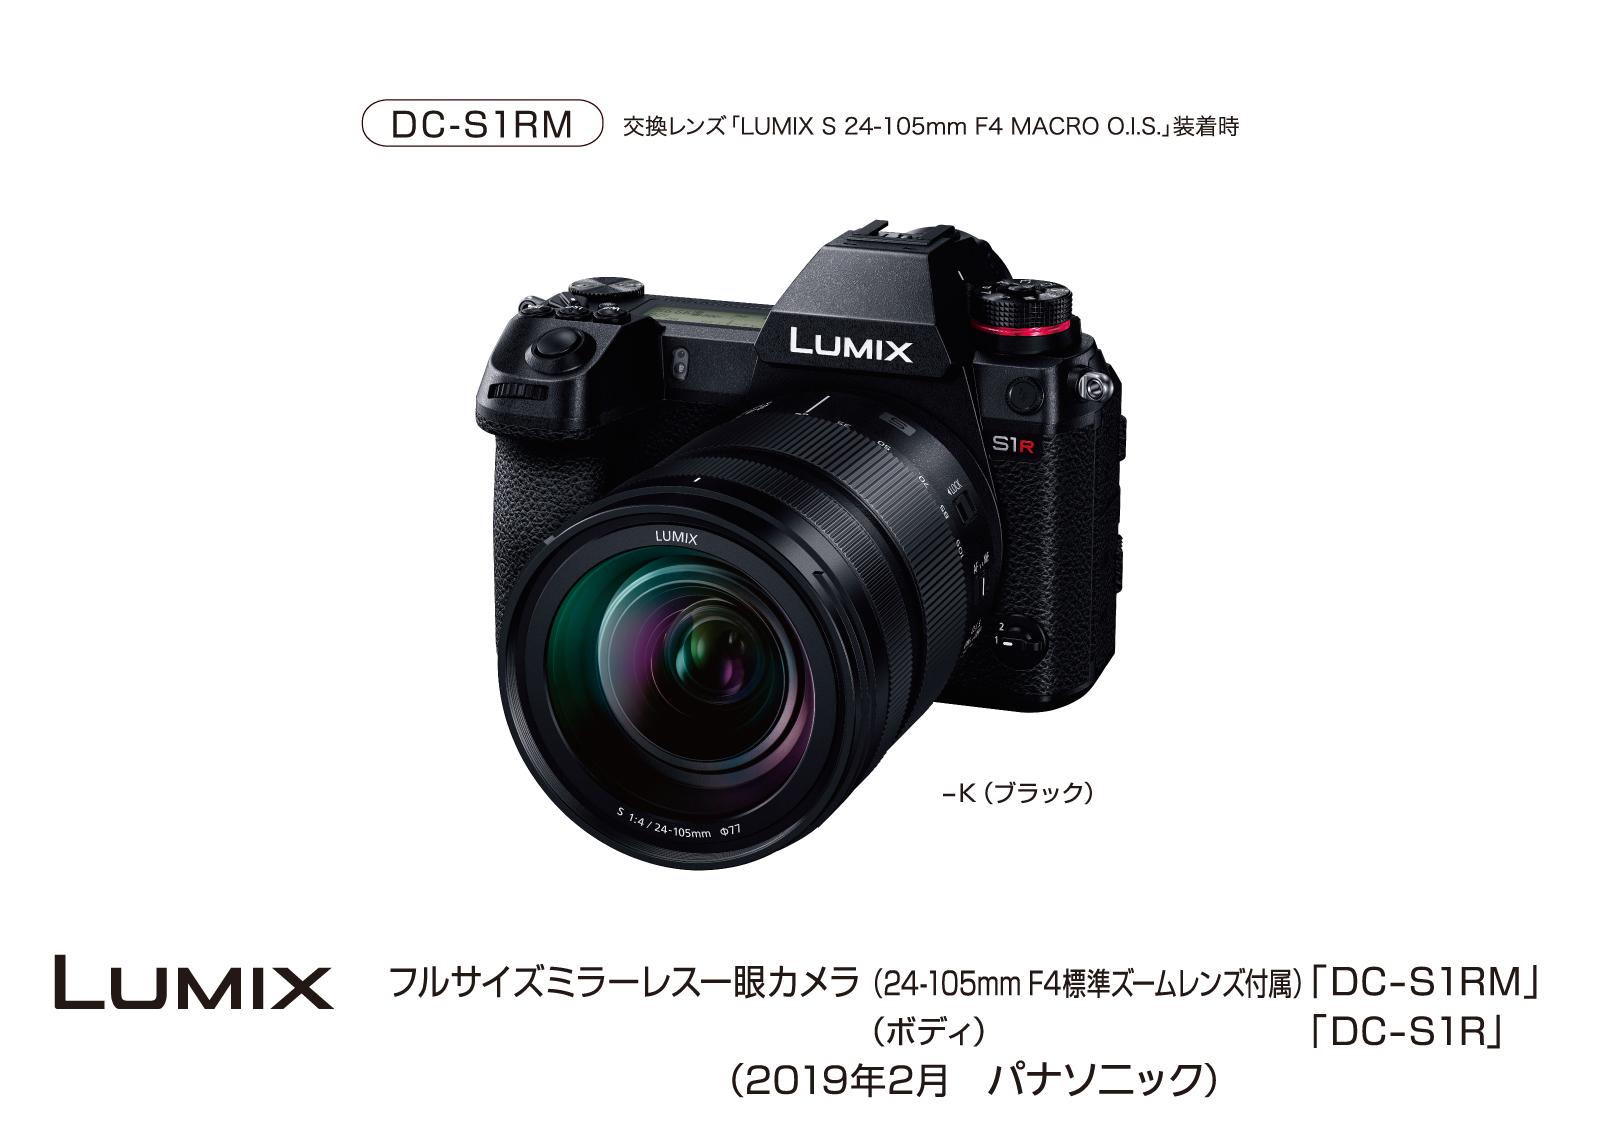 フルサイズミラーレスデジタル一眼カメラ「LUMIX」DC-S1R